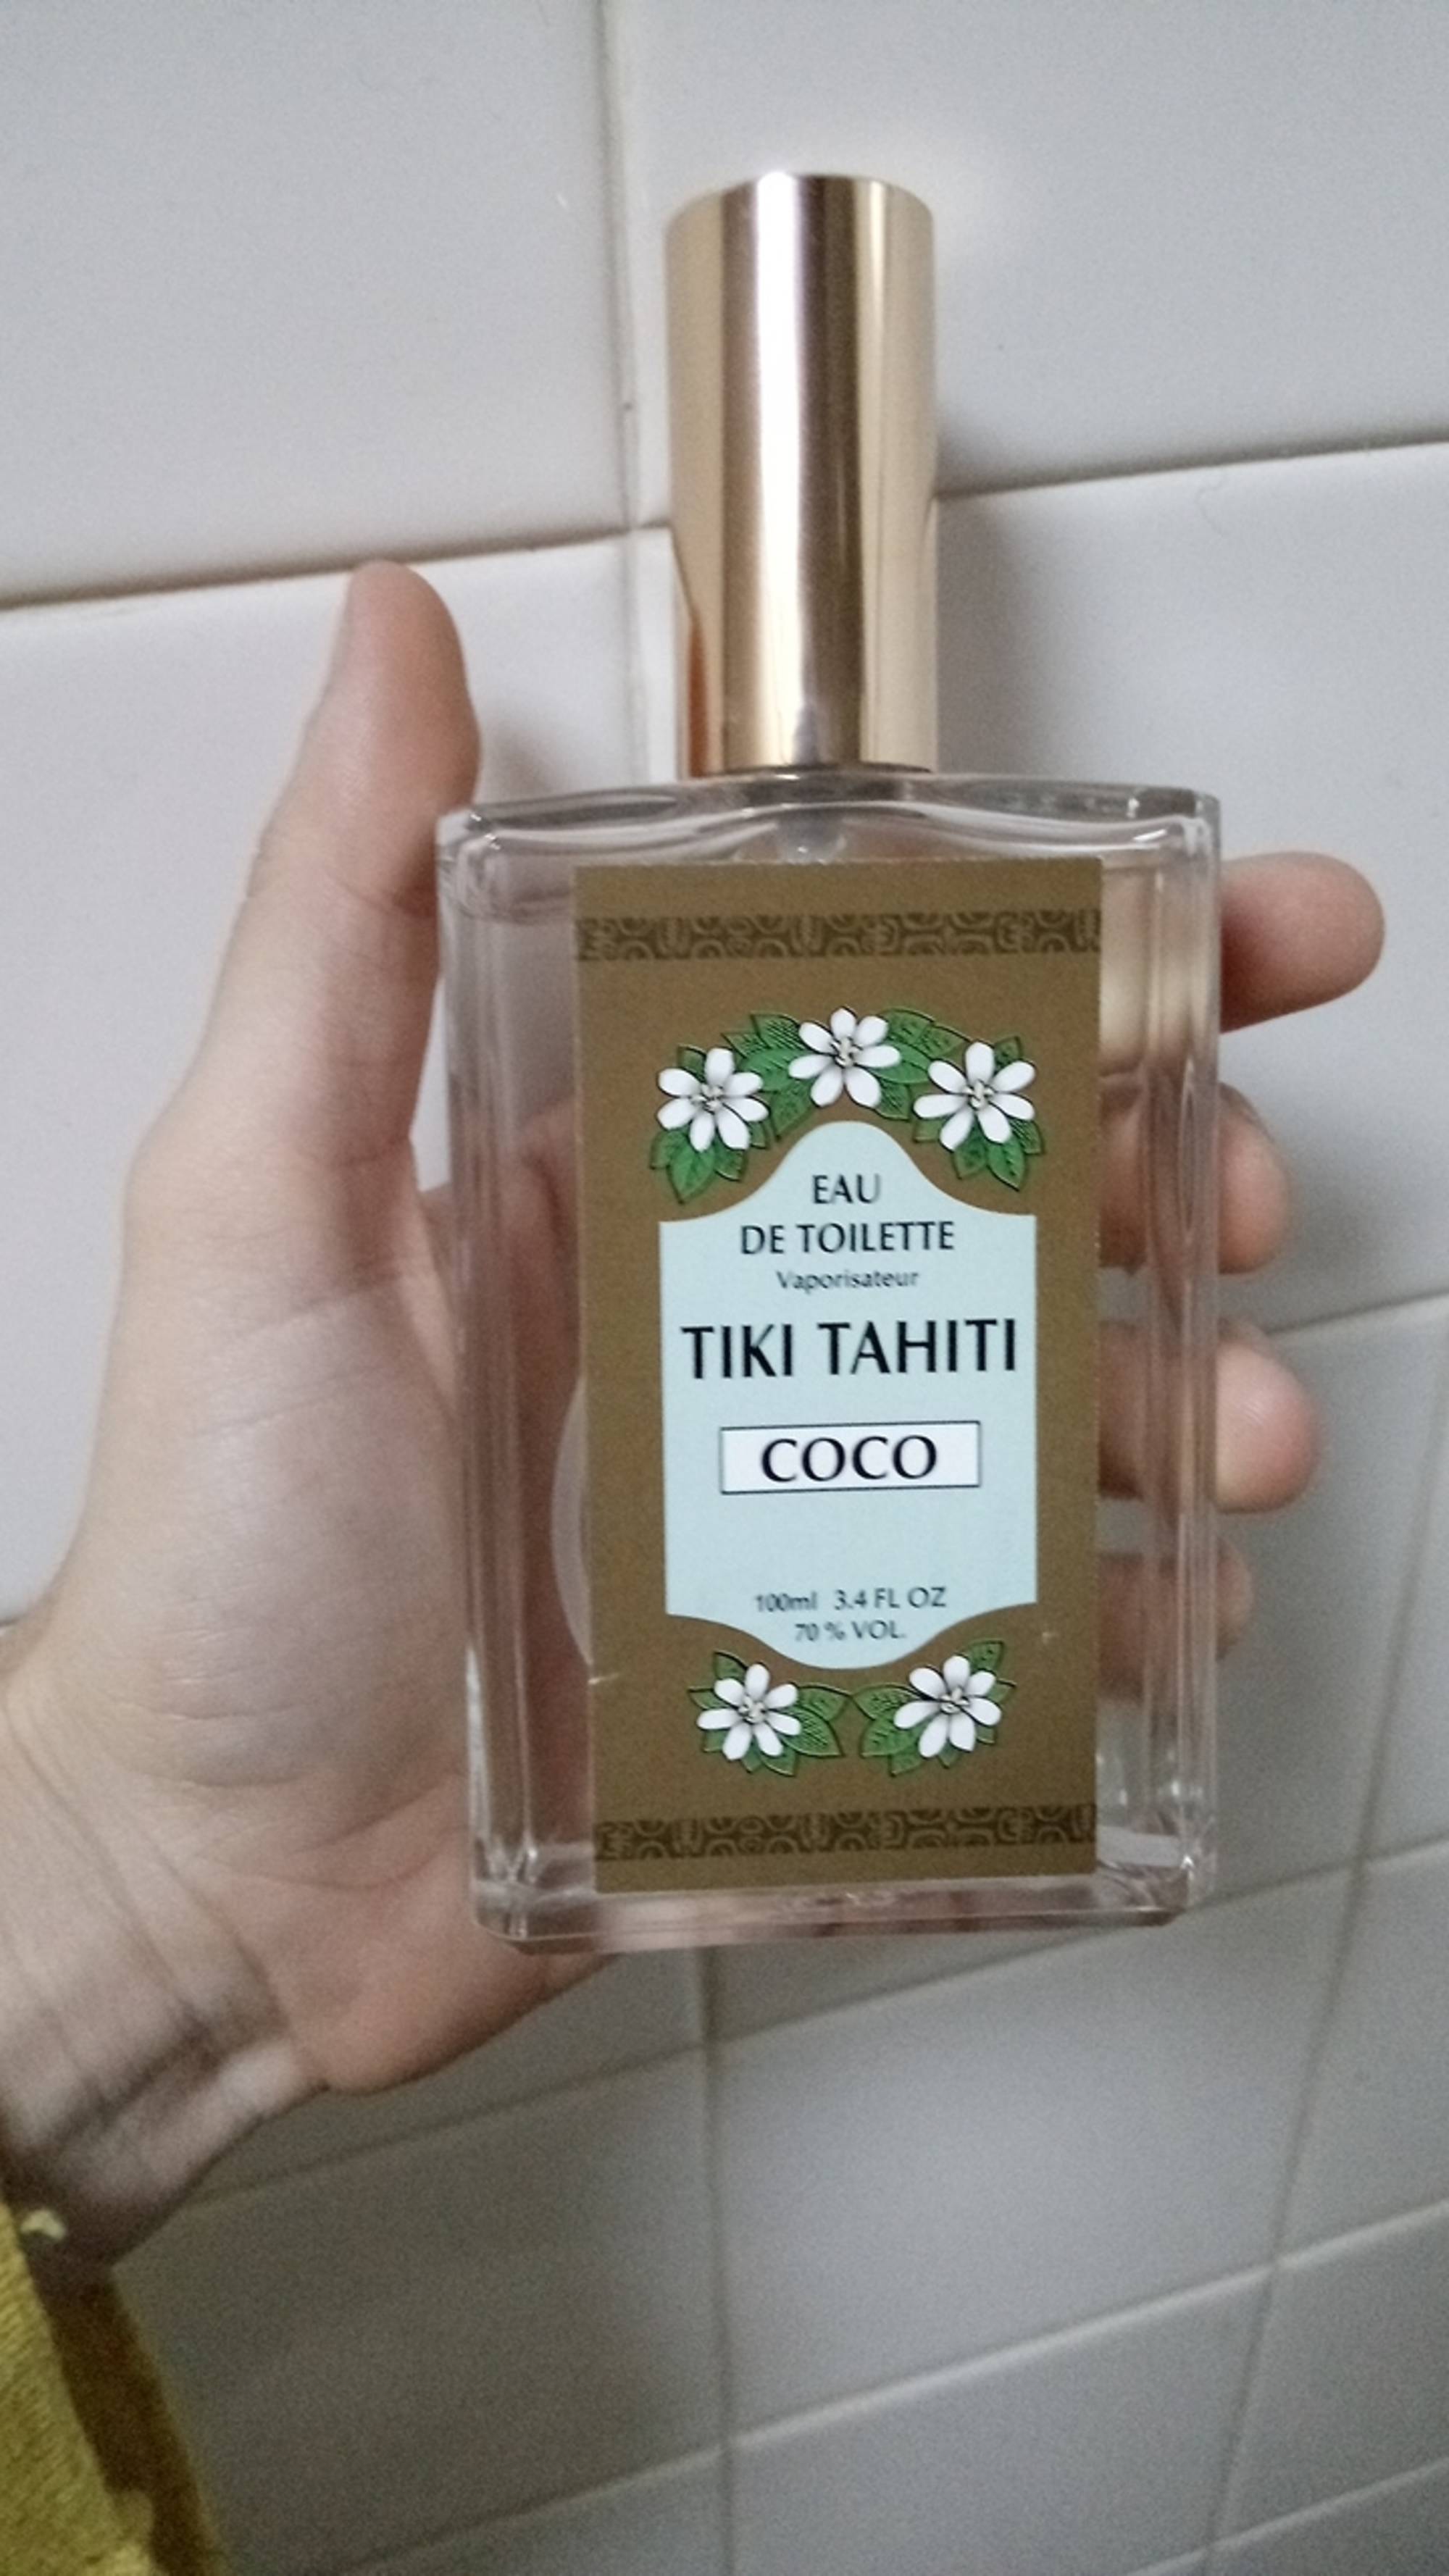 TIKI TAHITI - Coco - Eau de toilette 